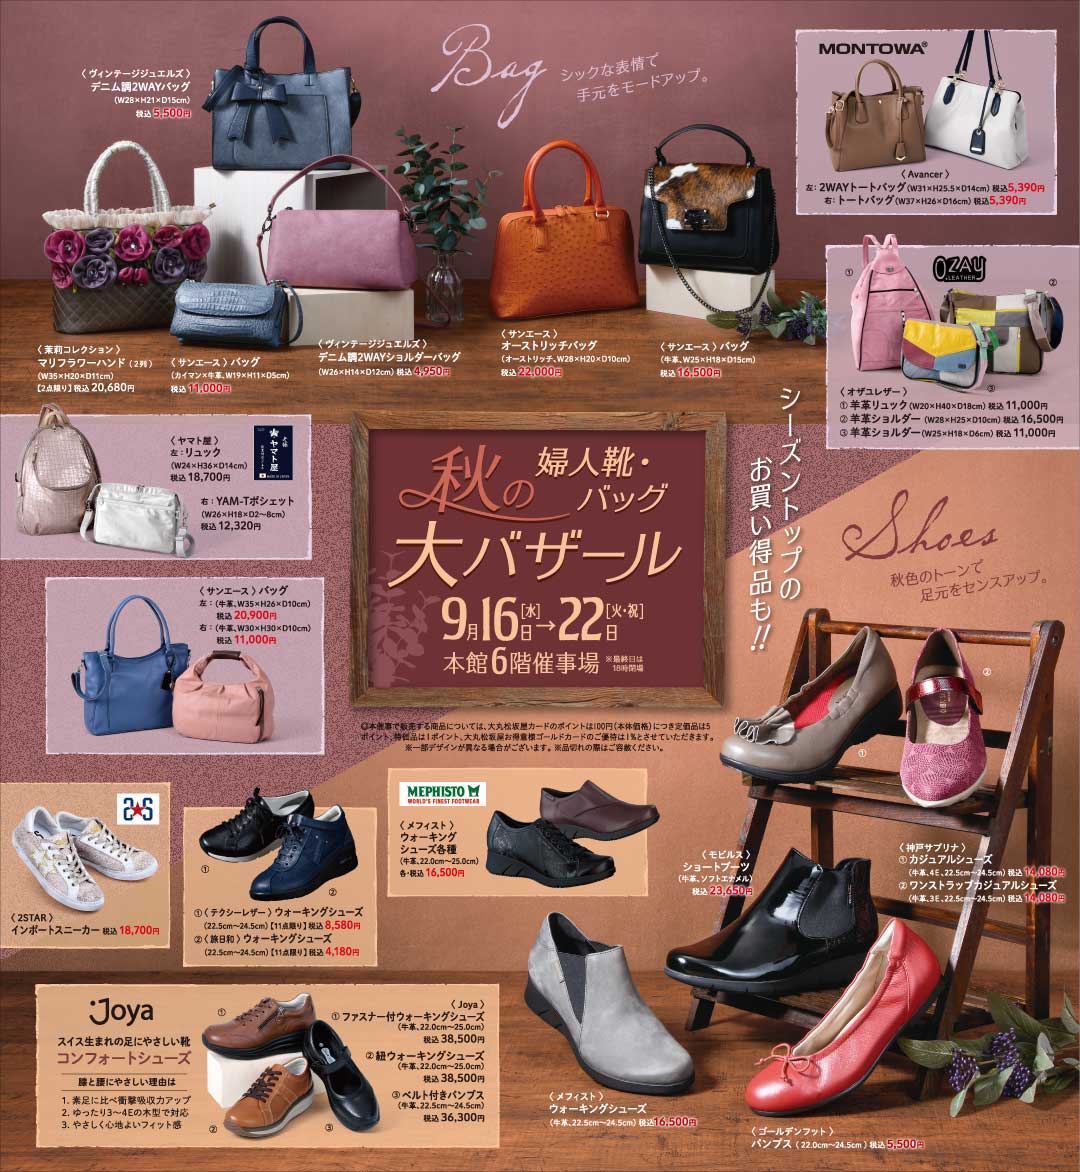 秋の婦人靴 バッグ大バザール 秋のおしゃれを彩る婦人靴 バッグ 服飾小物が勢揃い 松坂屋上野店